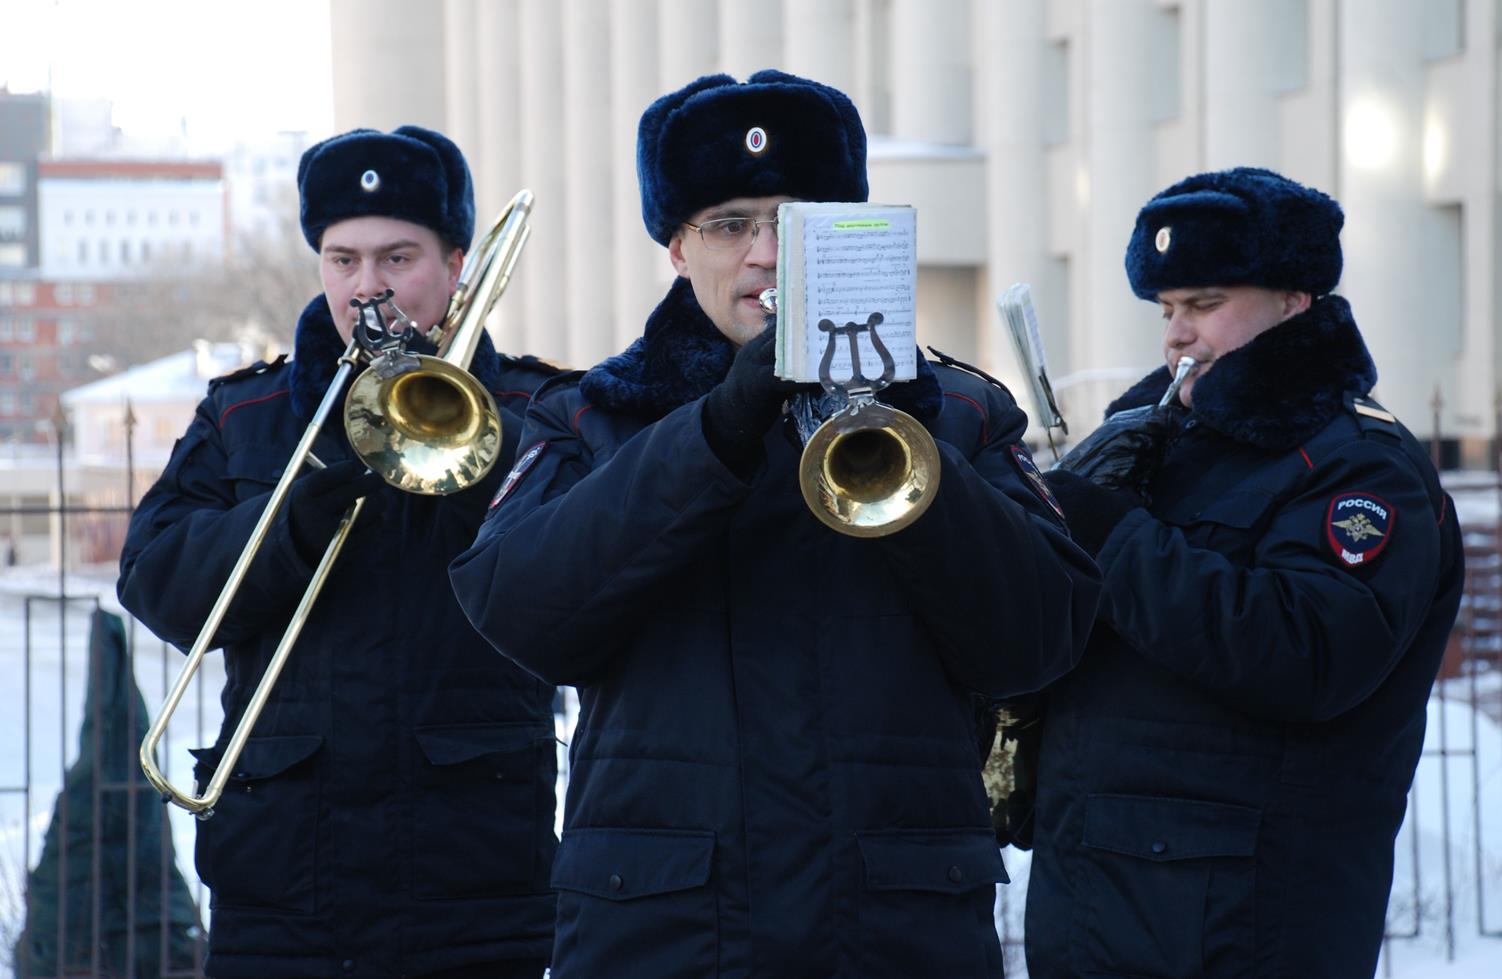 Оркестр нижегородской полиции сделал музыкальный подарок женщинам (ФОТО, ВИДЕО) - фото 2